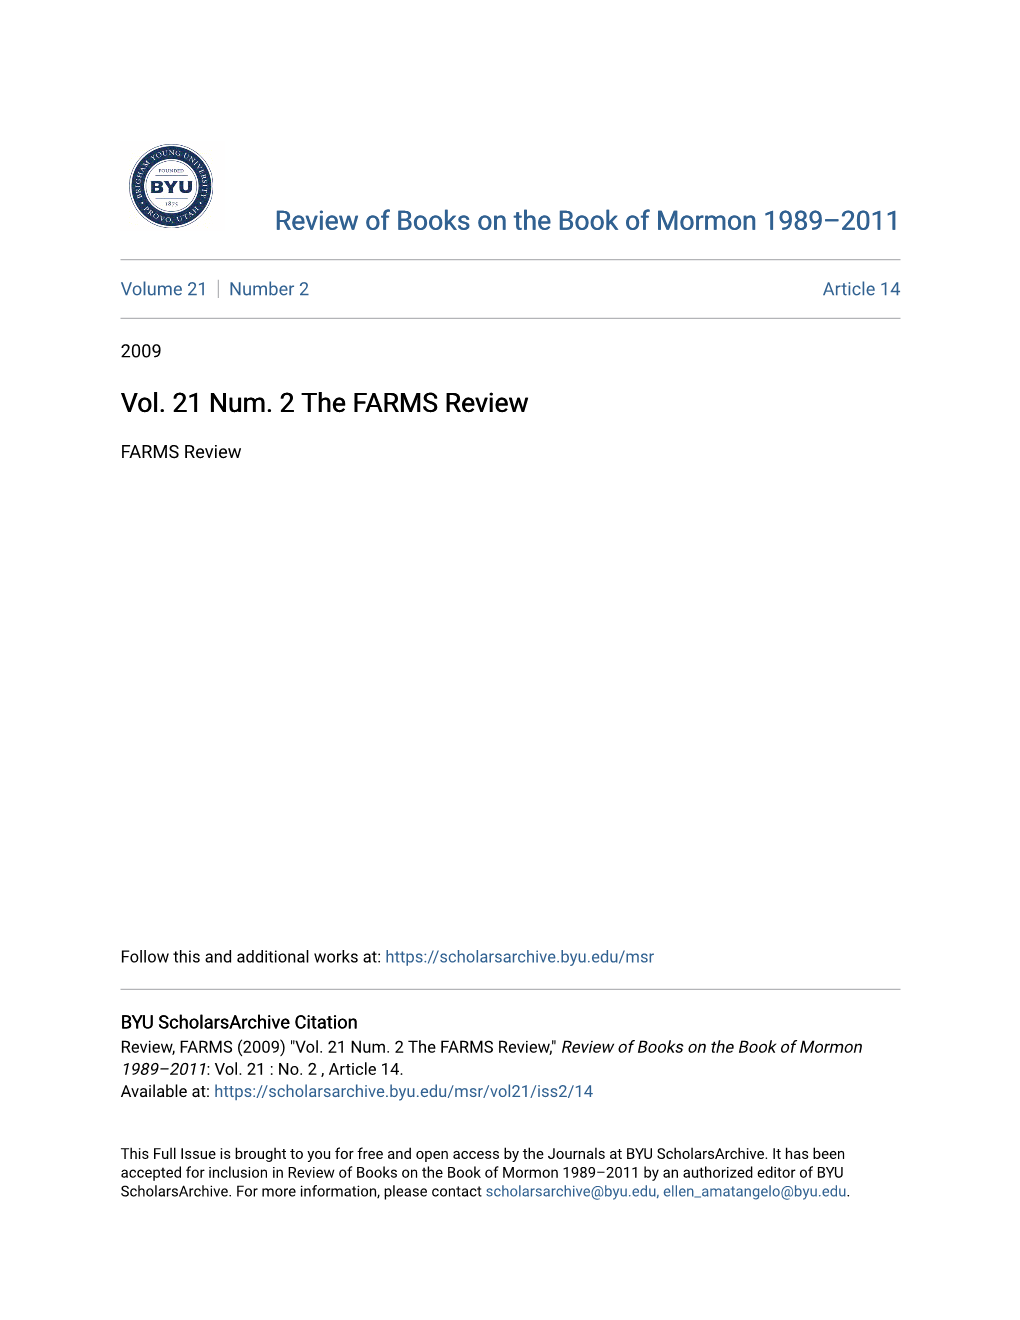 Vol. 21 Num. 2 the FARMS Review